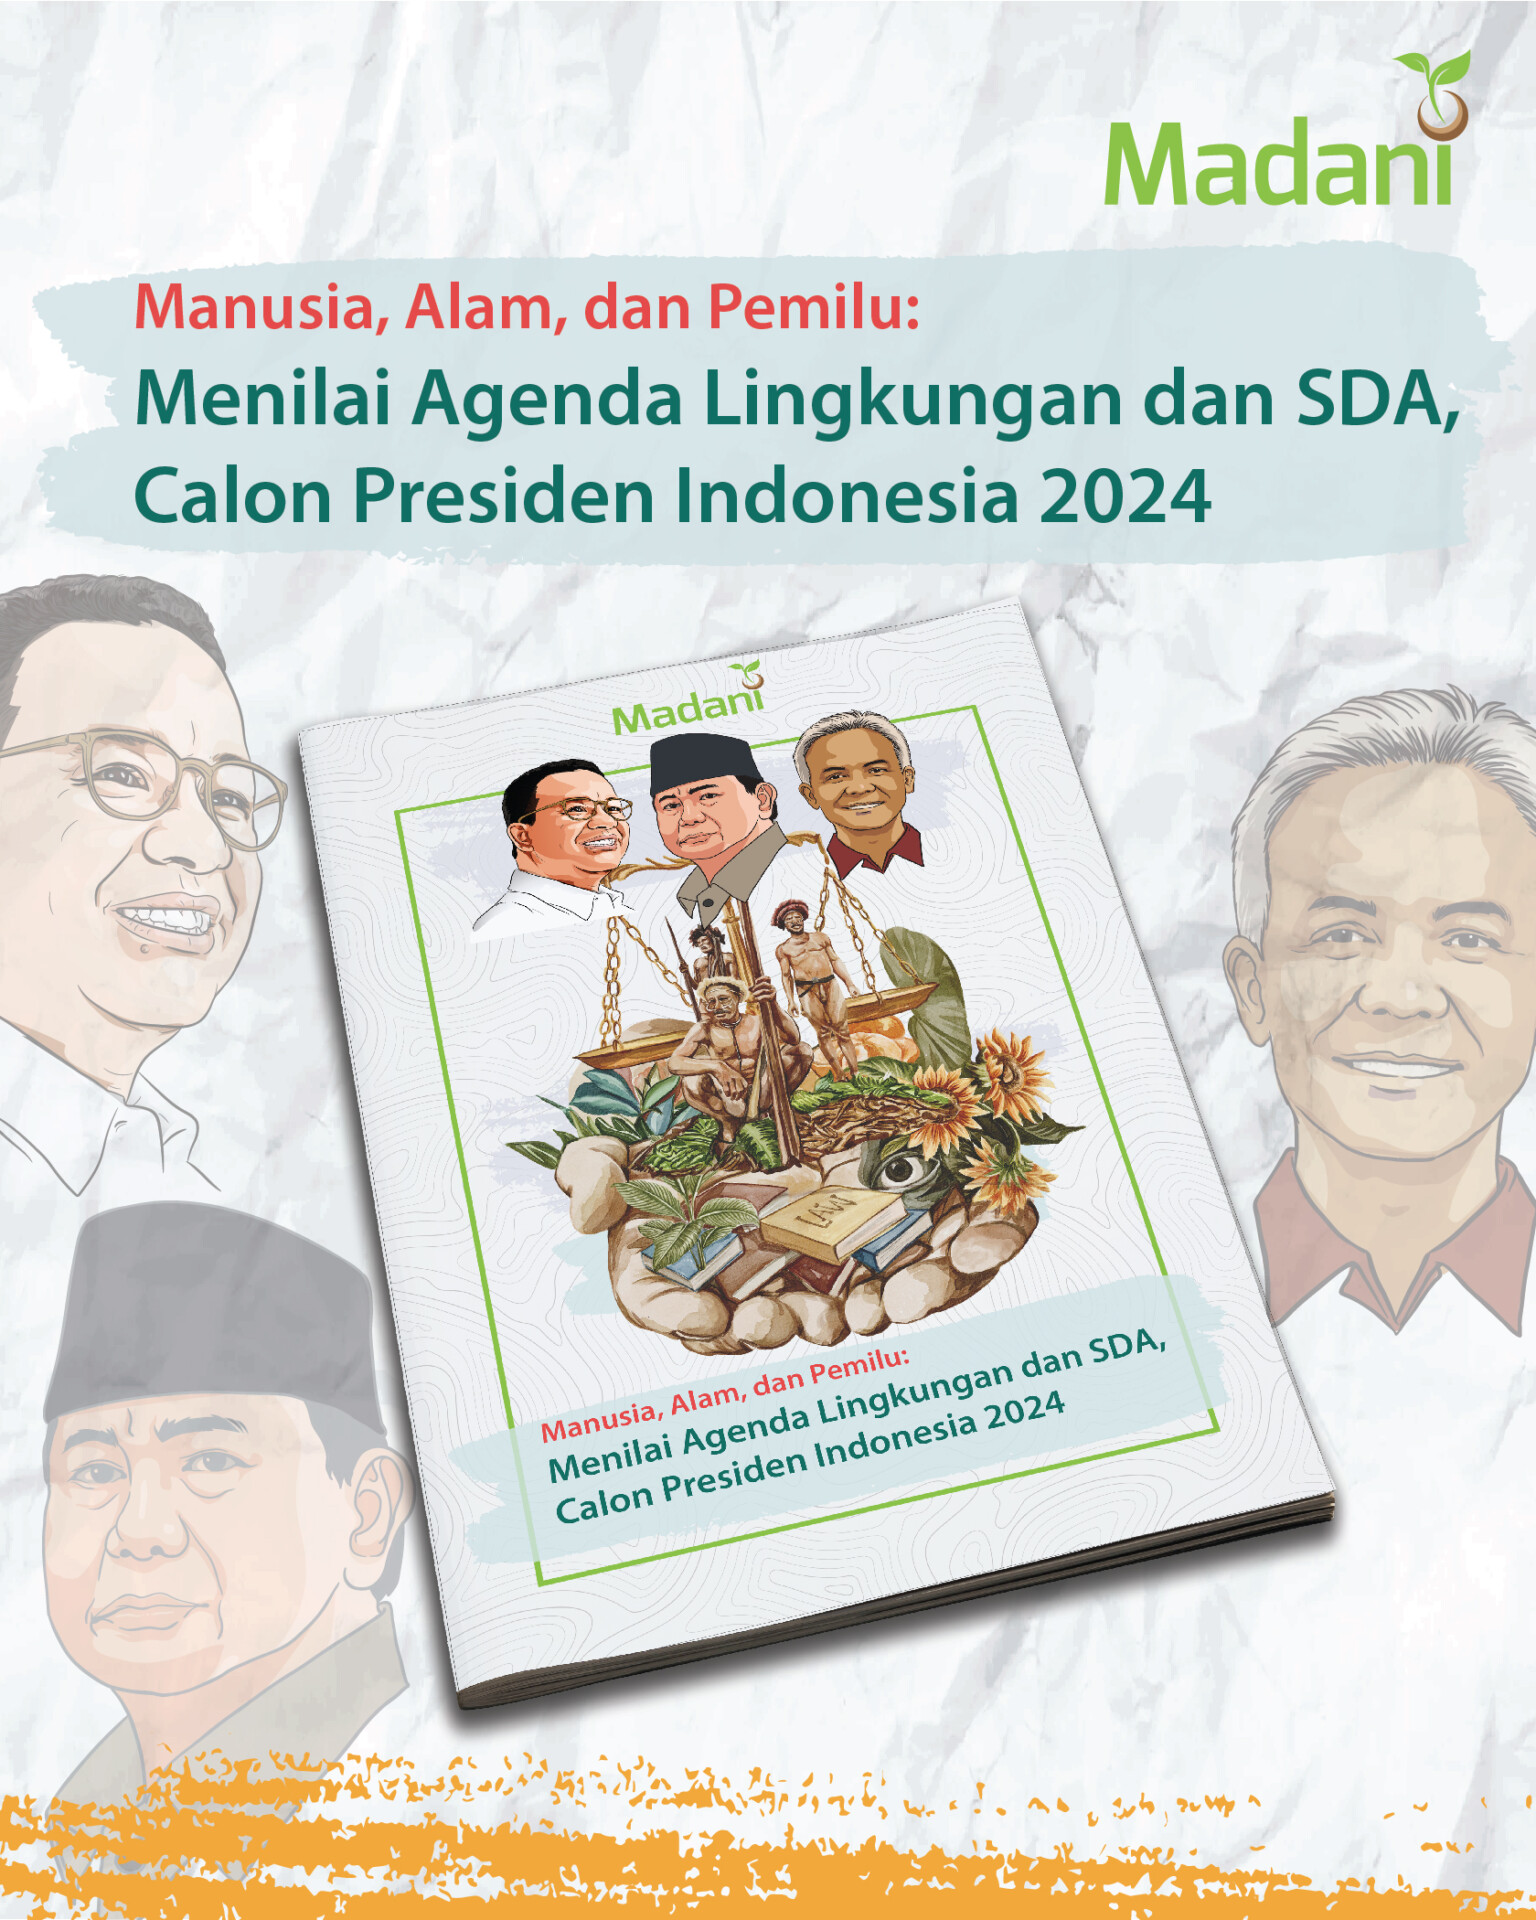 Manusia, Alam, dan Pemilu: Menilai Agenda Lingkungan dan SDA, Calon Presiden Indonesia 2024